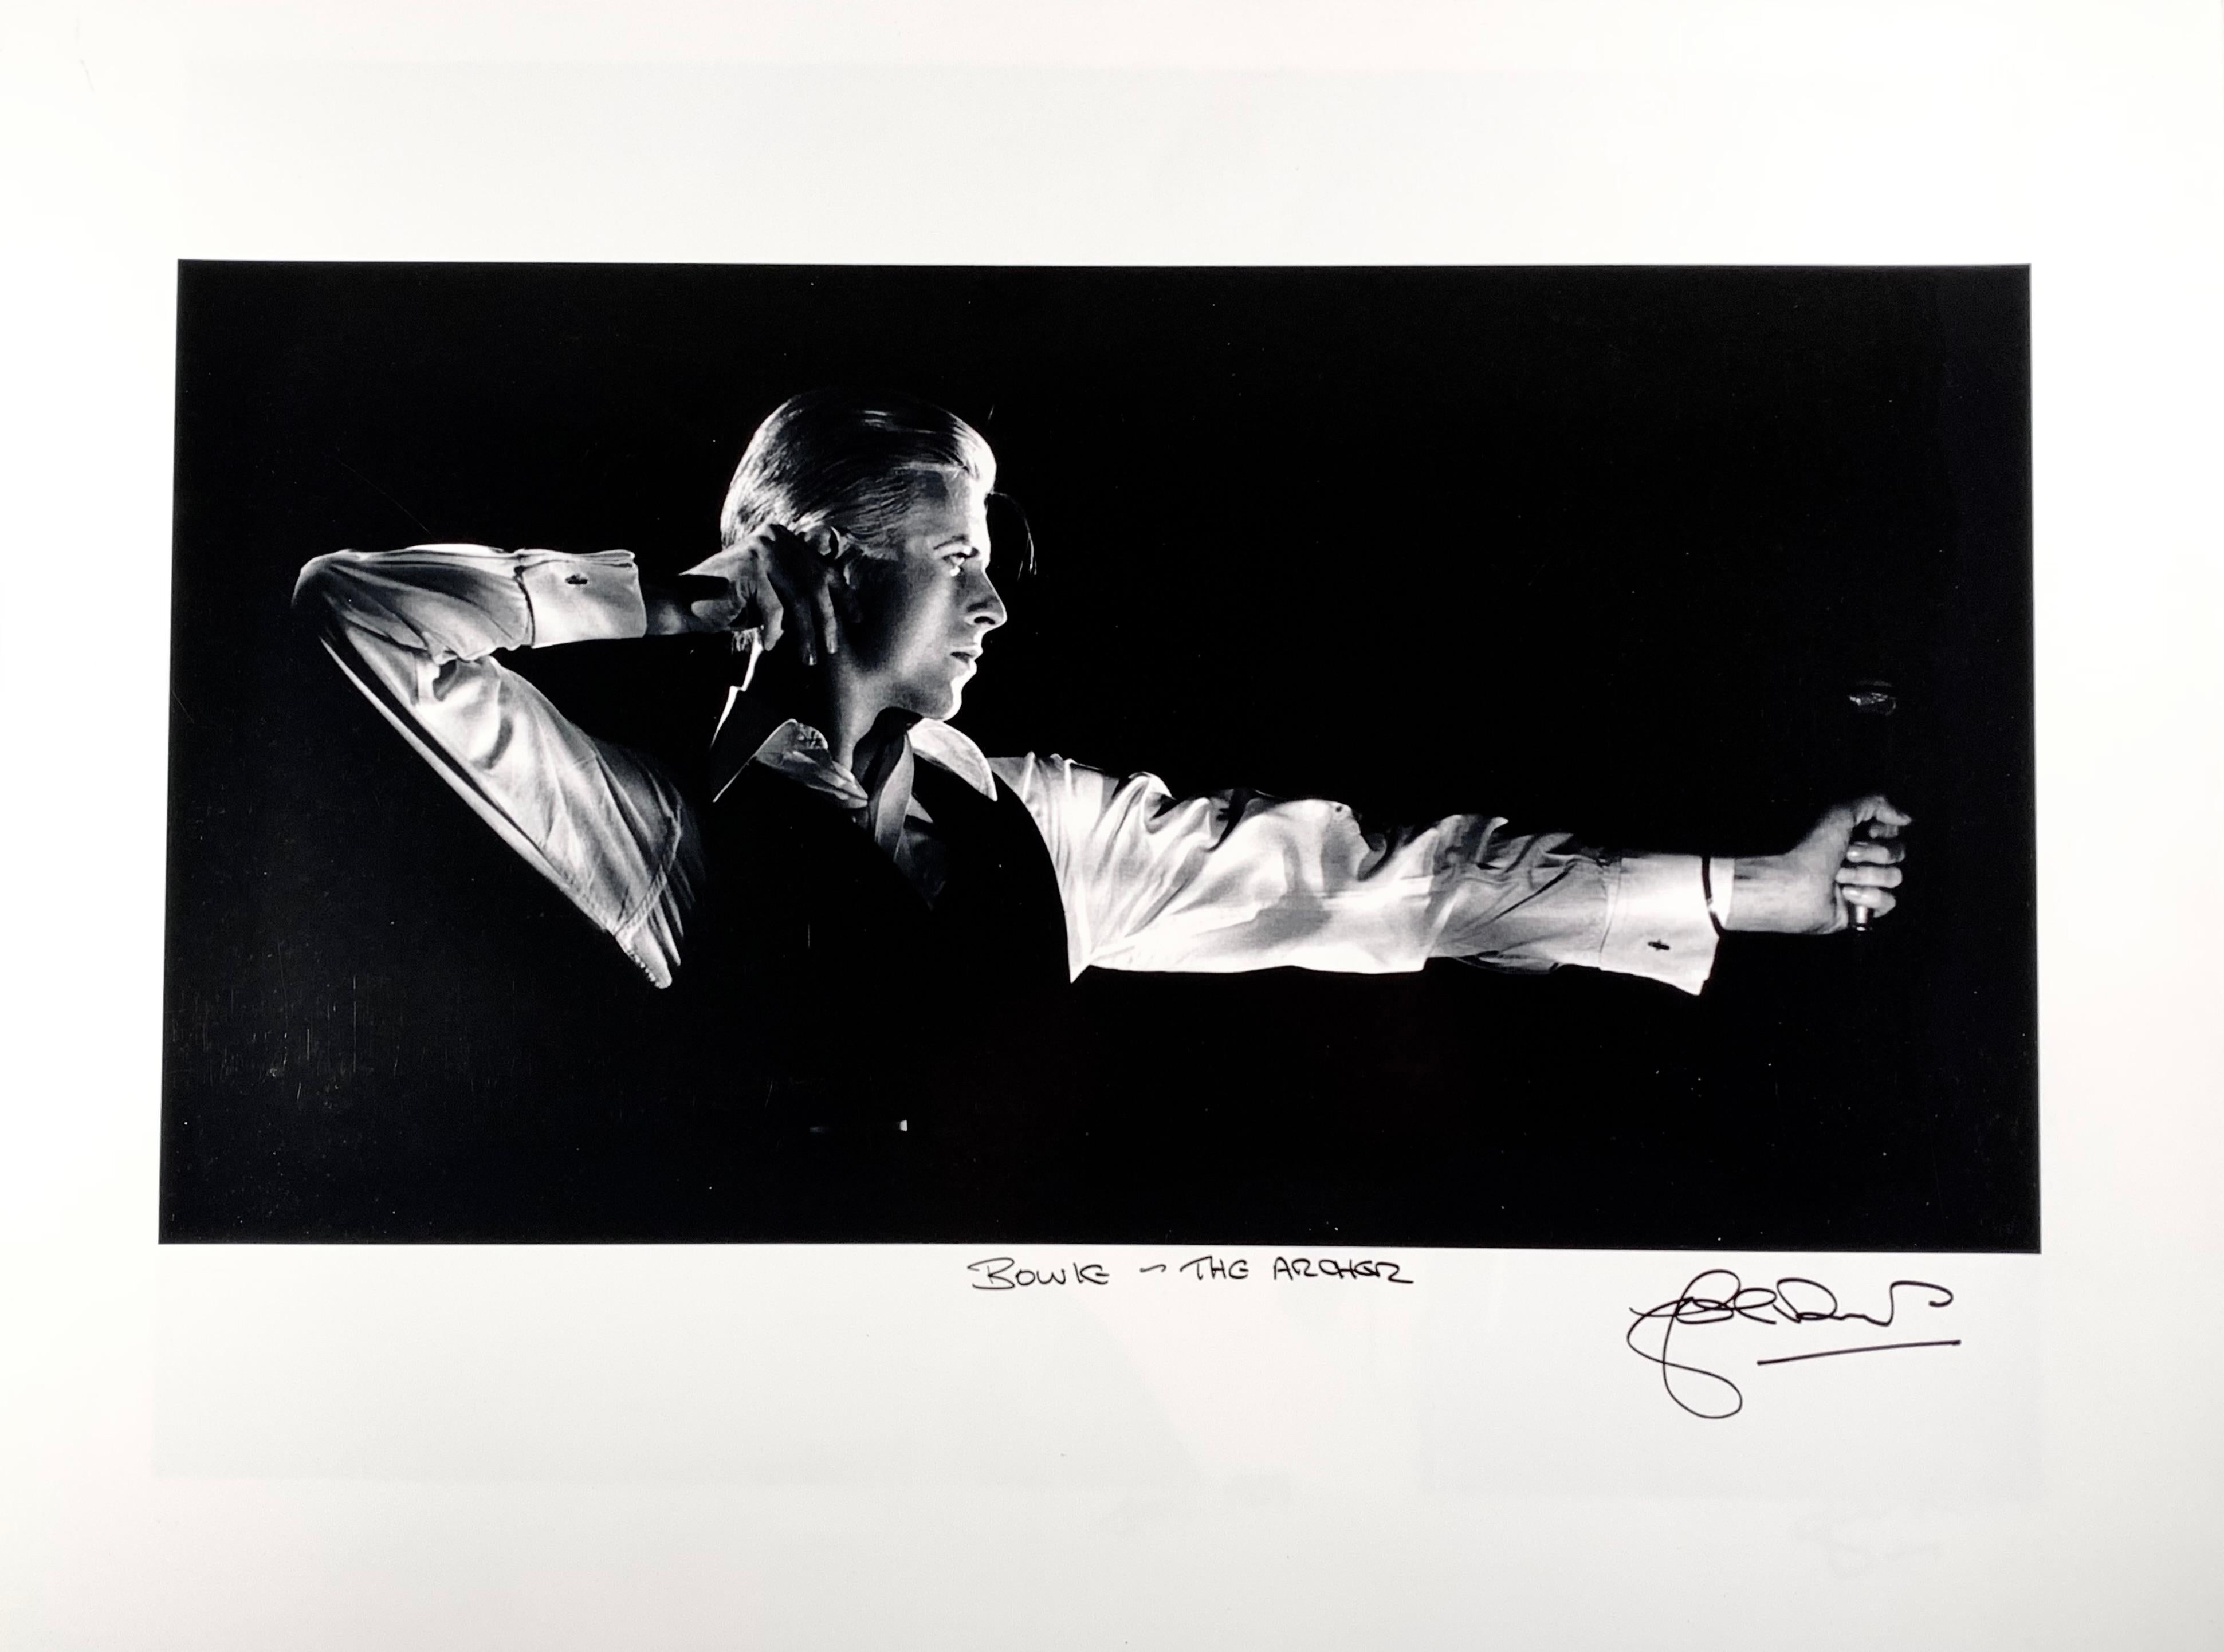 Der famose kanadische Fotograf John Robert Rowlands fotografiert seit 1960 prominente Musiker, und in den 61 Jahren seiner Tätigkeit hat ihn seine Arbeit um die ganze Welt geführt. Er hat so legendäre Künstler wie David Bowie, Jimi Hendricks, Bob